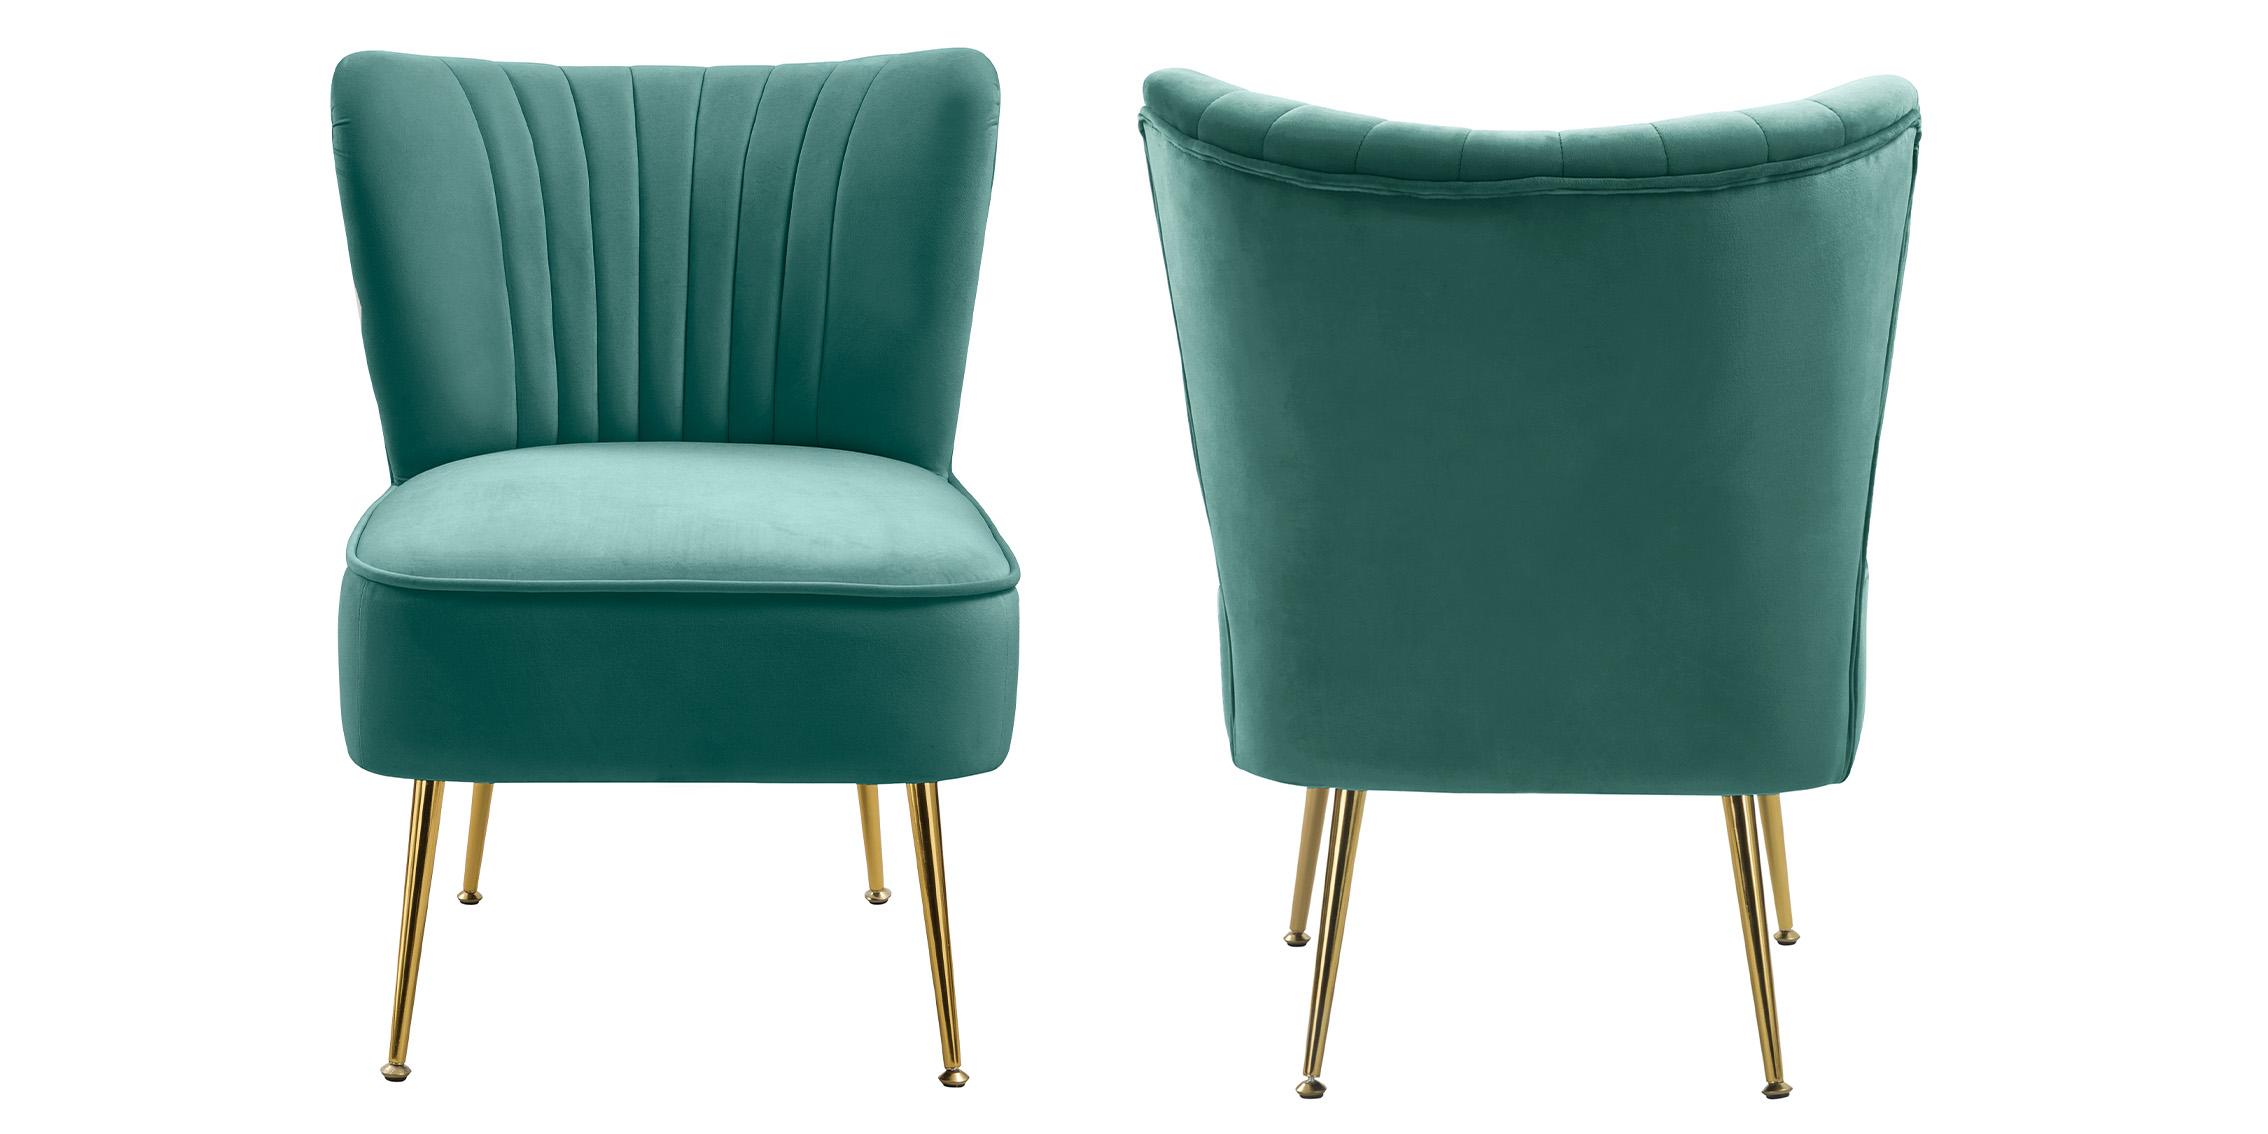 

    
Meridian Furniture TESS 504Mint Accent Chair Mint 504Mint
